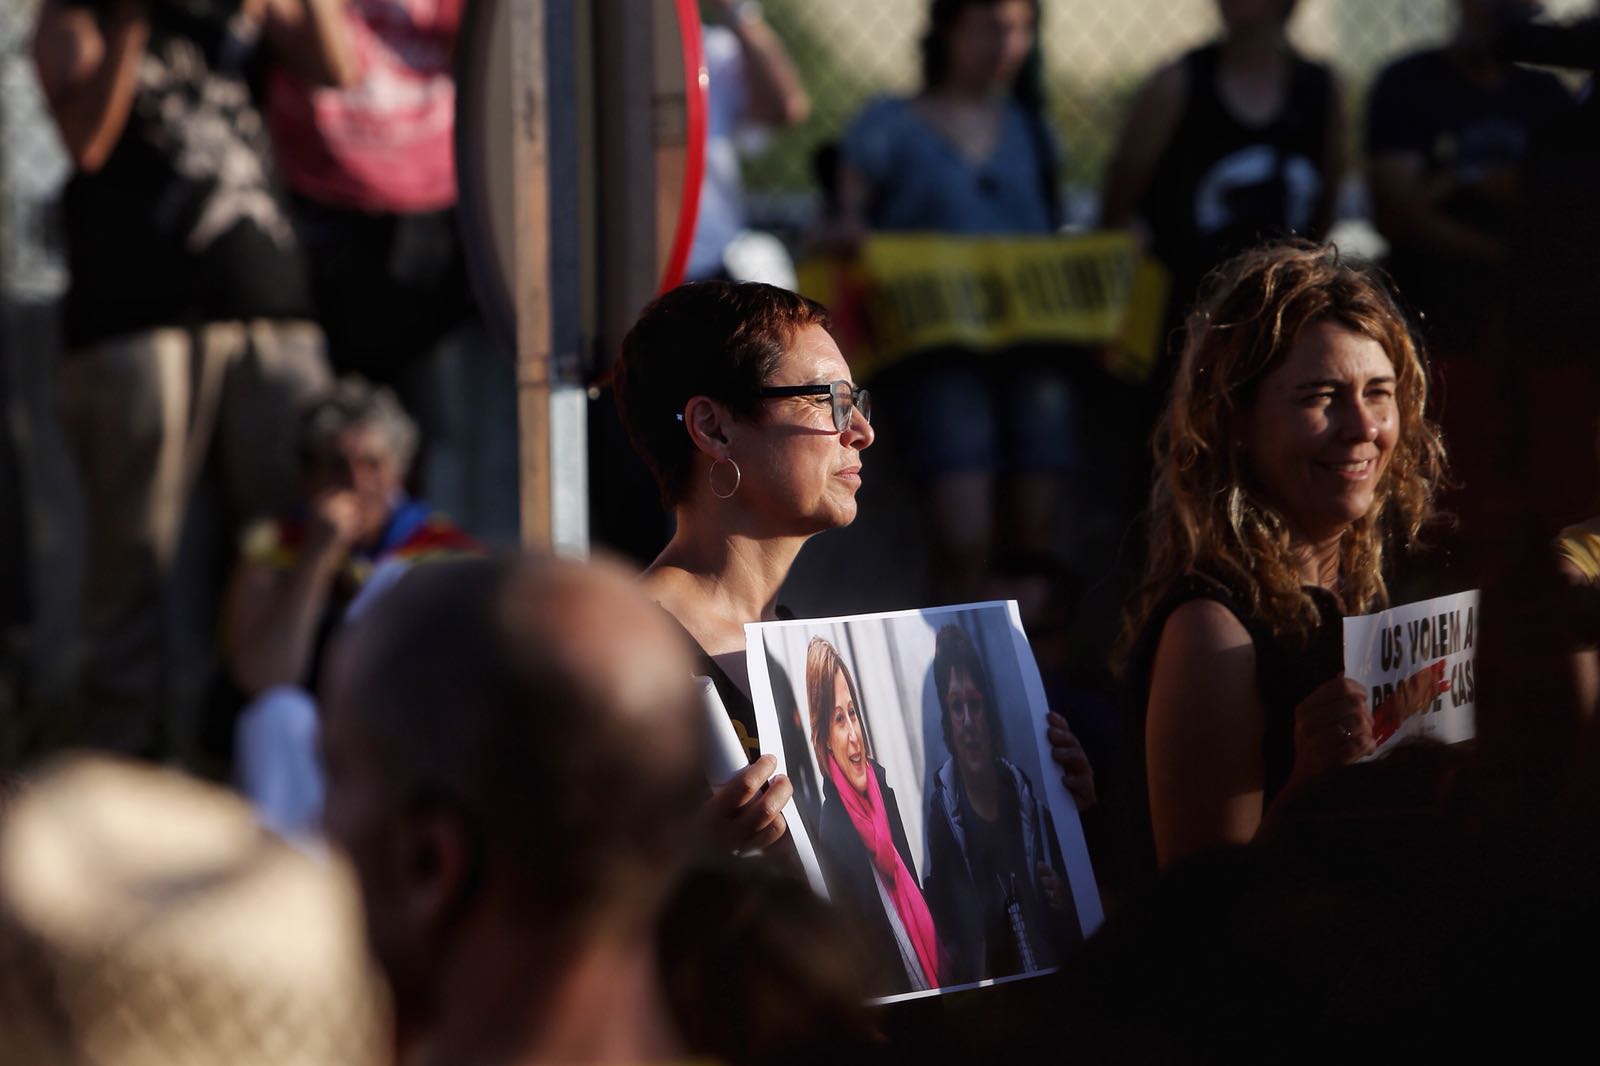 El emotivo discurso de Montse Bassa: "Han entrado en Catalunya pero no están en casa"